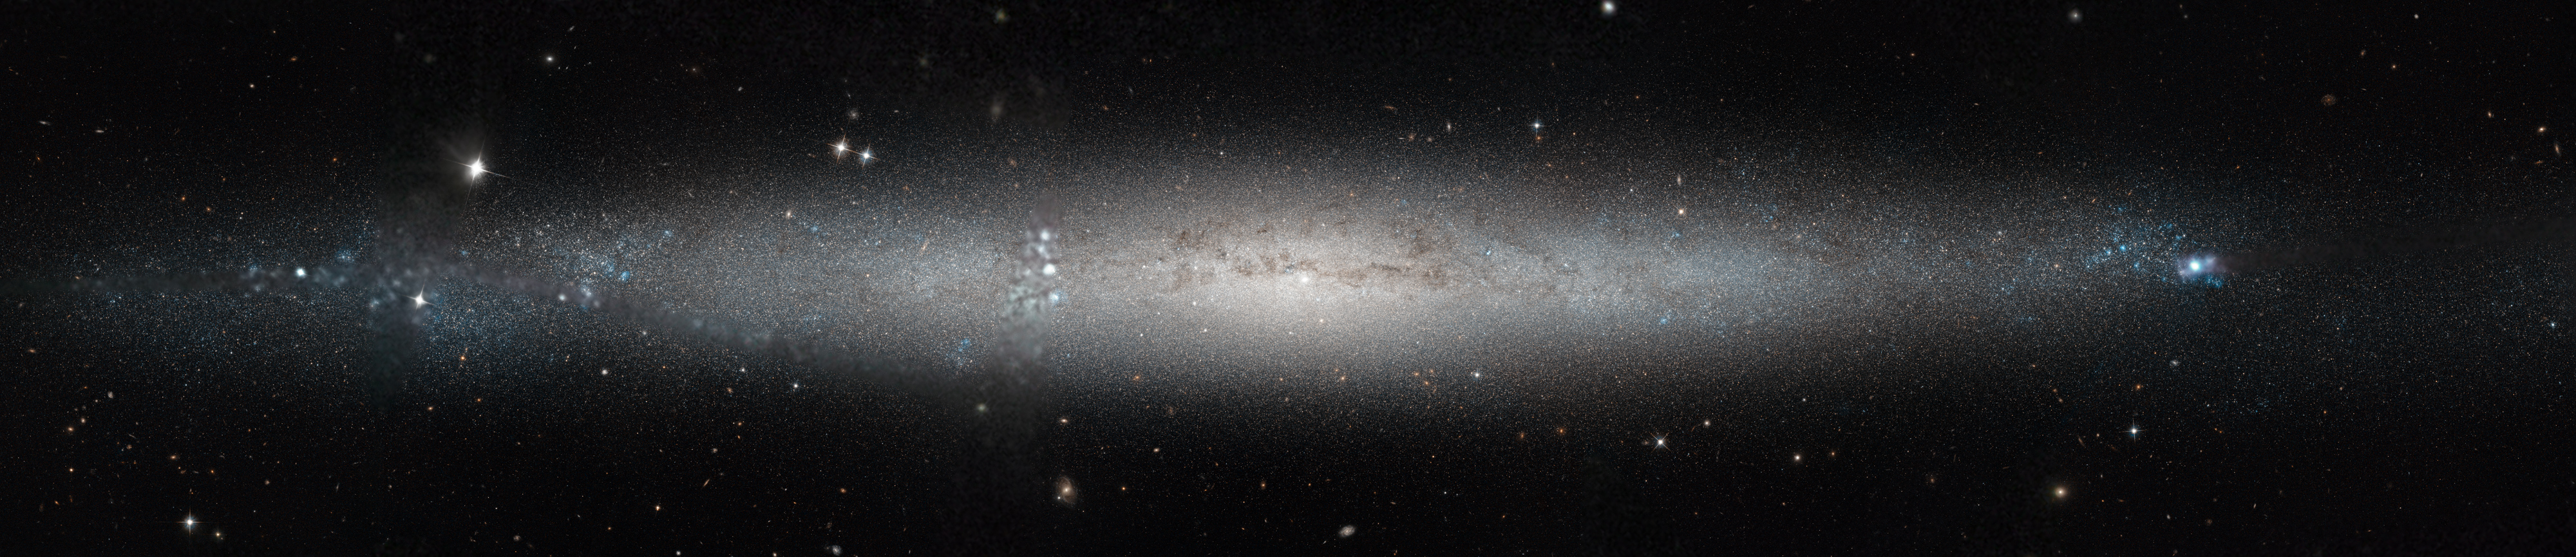 NGC4244v1.jpg